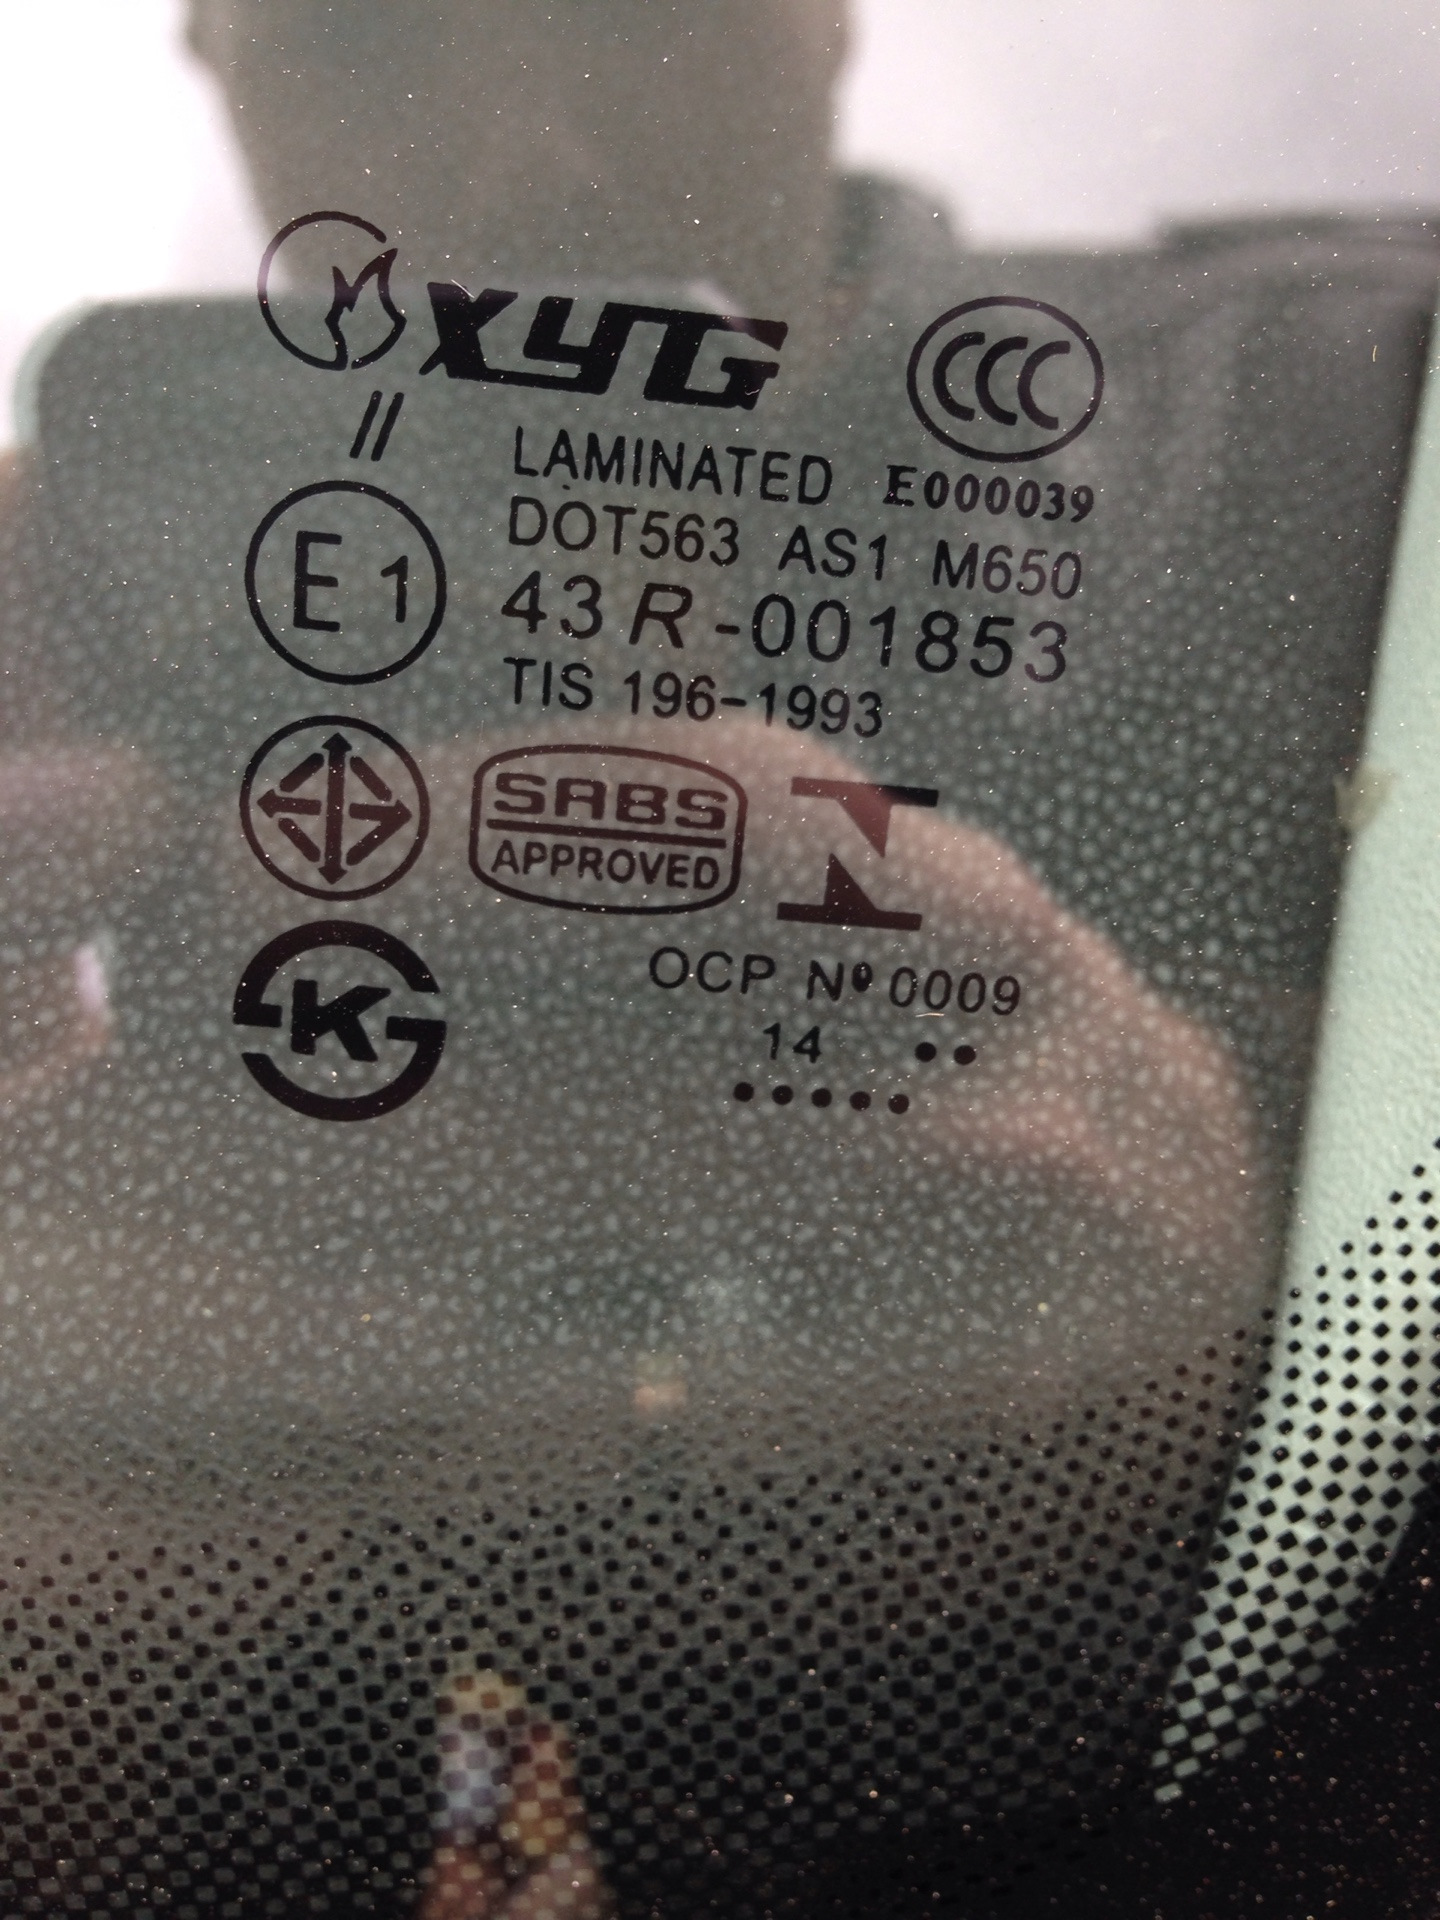 Автостекла xyg. Атермальное лобовое стекло XYG. Лобовое стекло XYG маркировка. Маркировка атермального стекла XYG. XYG атермальное стекло Subaru.